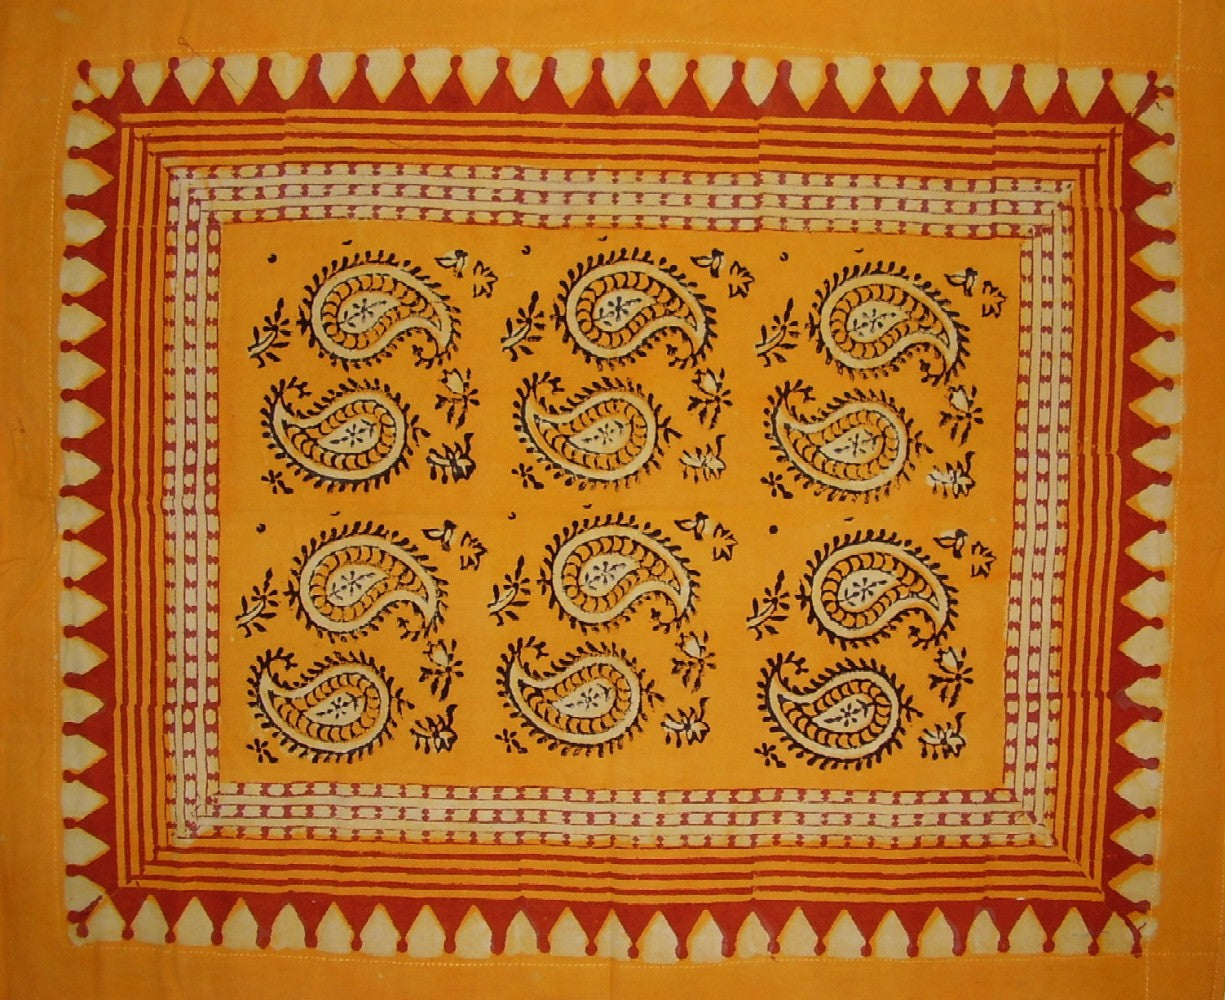 Wende-Kissenbezug aus Baumwolle mit Veggie-Dye-Blockdruck, 71,1 x 61 cm, mehrfarbig